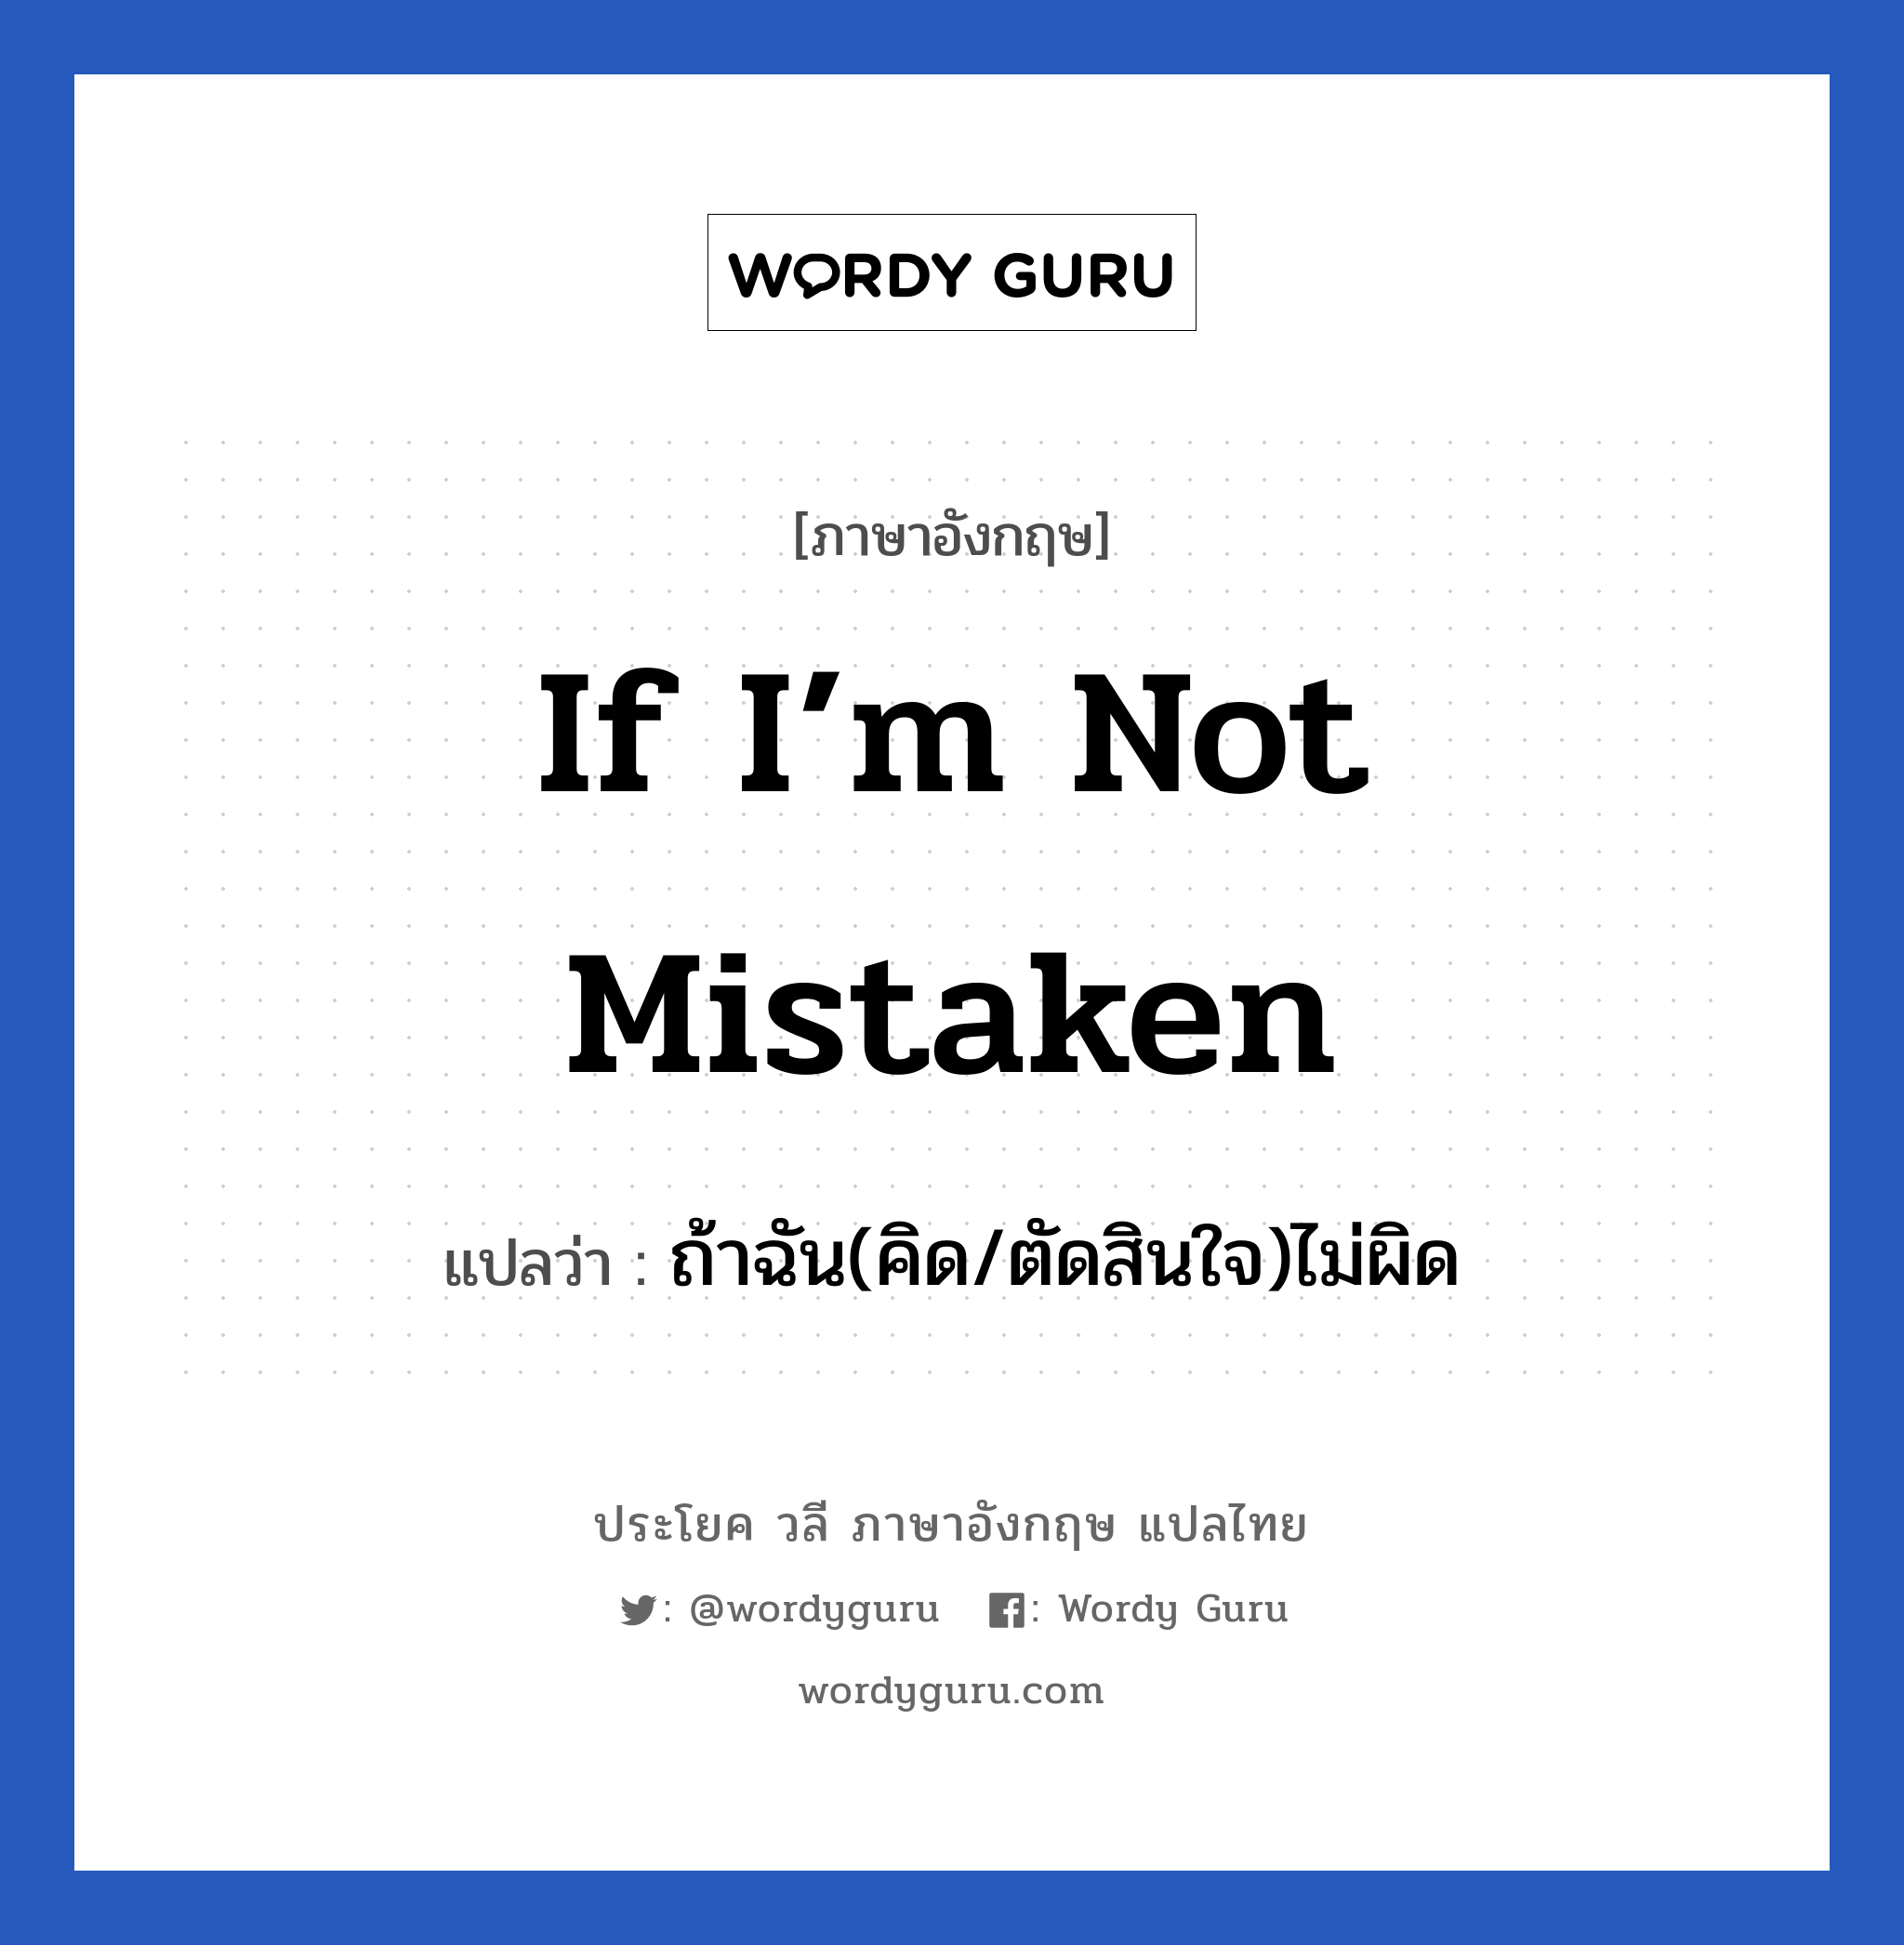 ถ้าฉัน(คิด/ตัดสินใจ)ไม่ผิด ภาษาอังกฤษ?, วลีภาษาอังกฤษ ถ้าฉัน(คิด/ตัดสินใจ)ไม่ผิด แปลว่า If I’m not mistaken